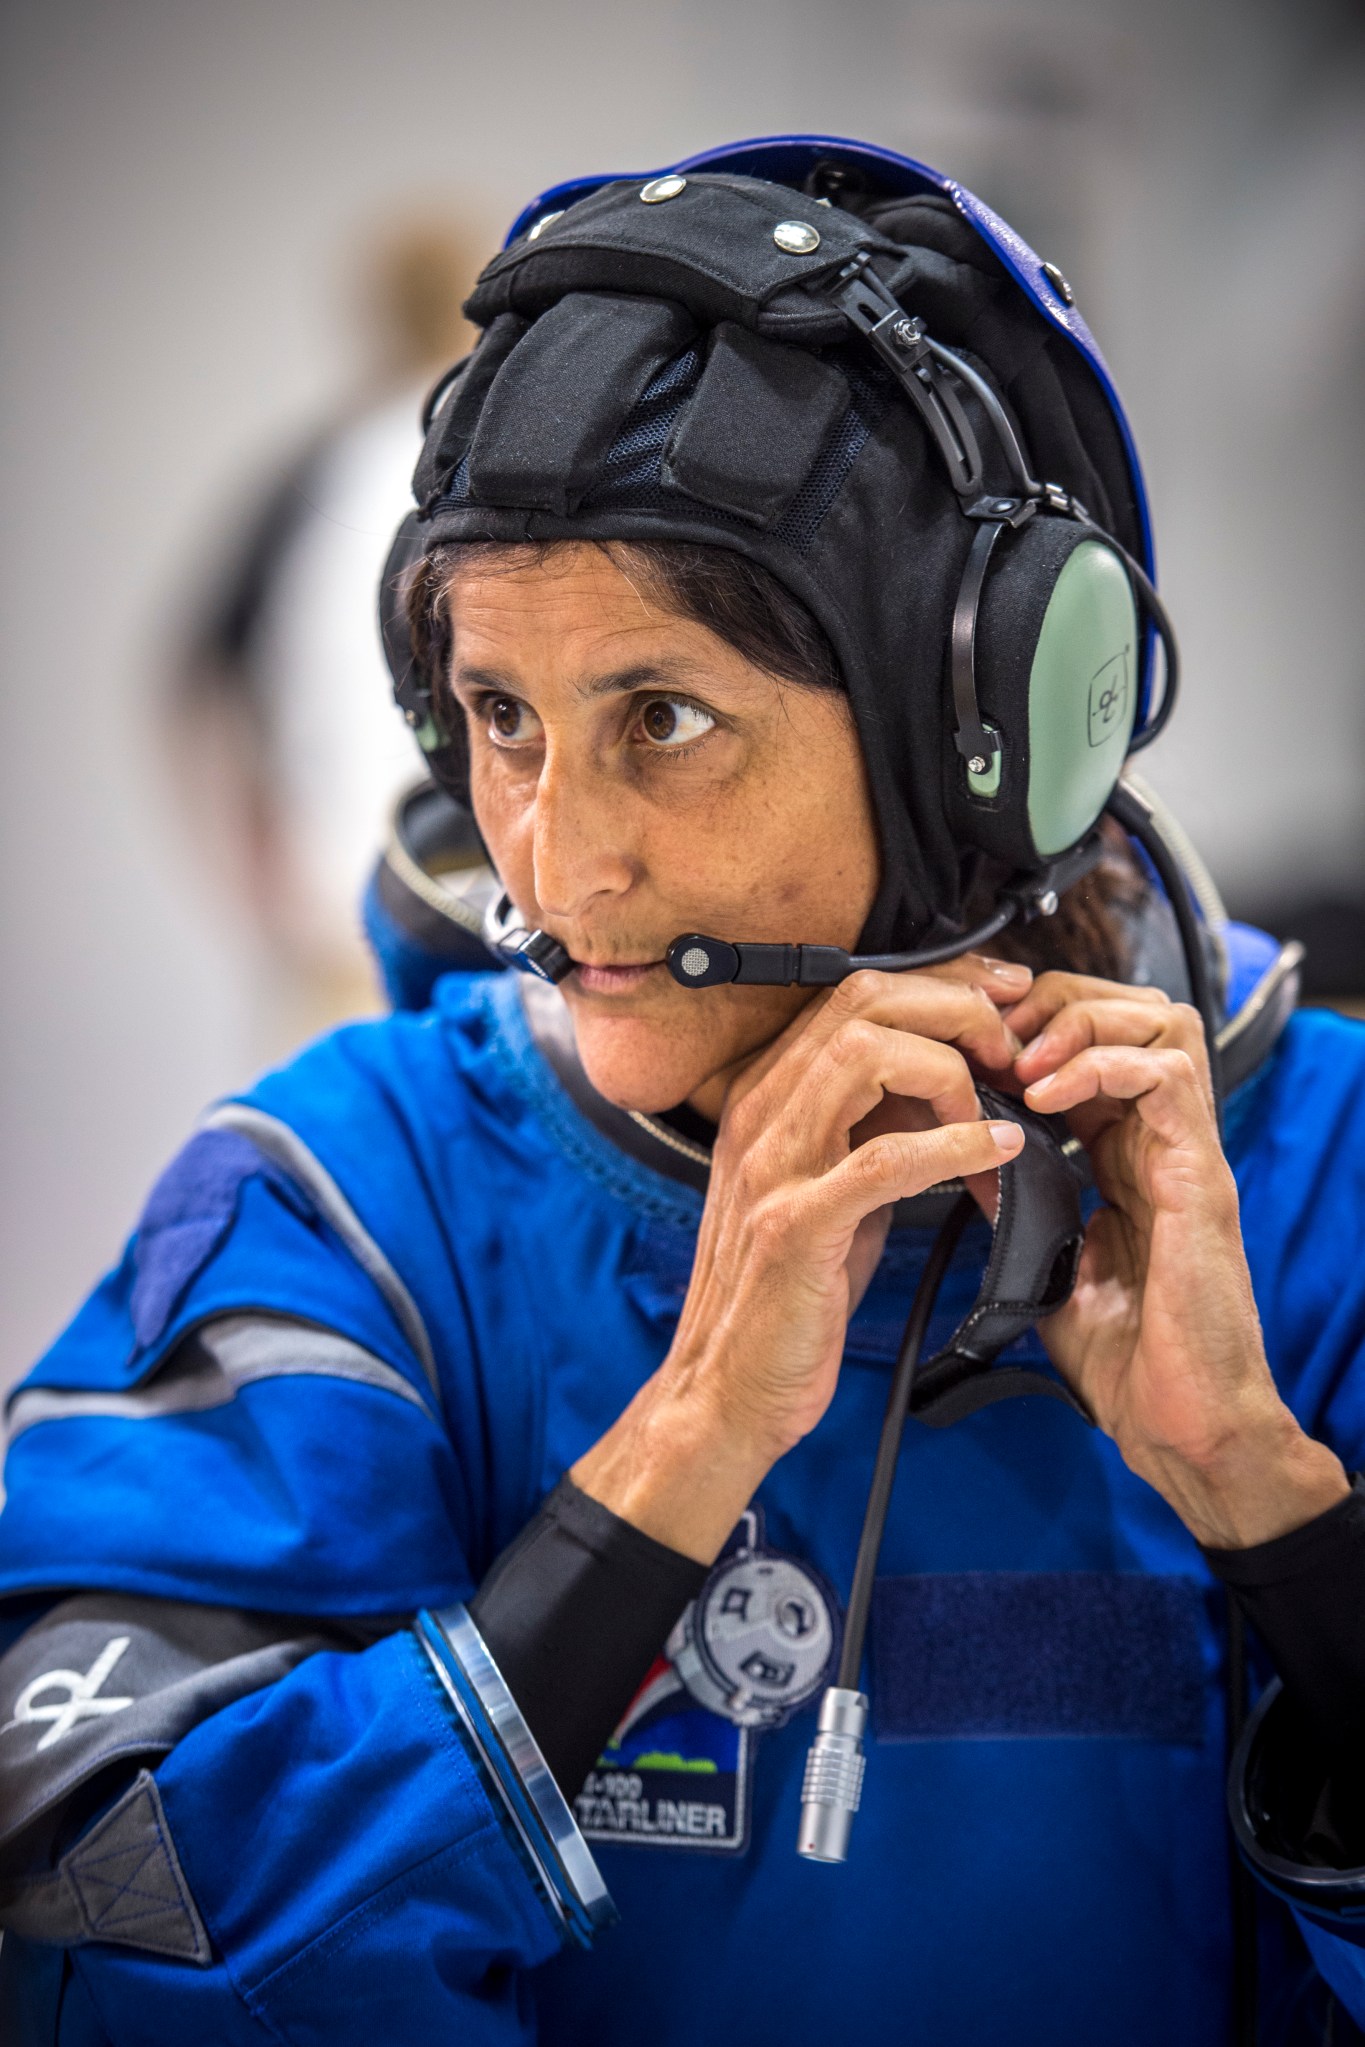 Astronaut Suni Williams in Boeing spacesuit